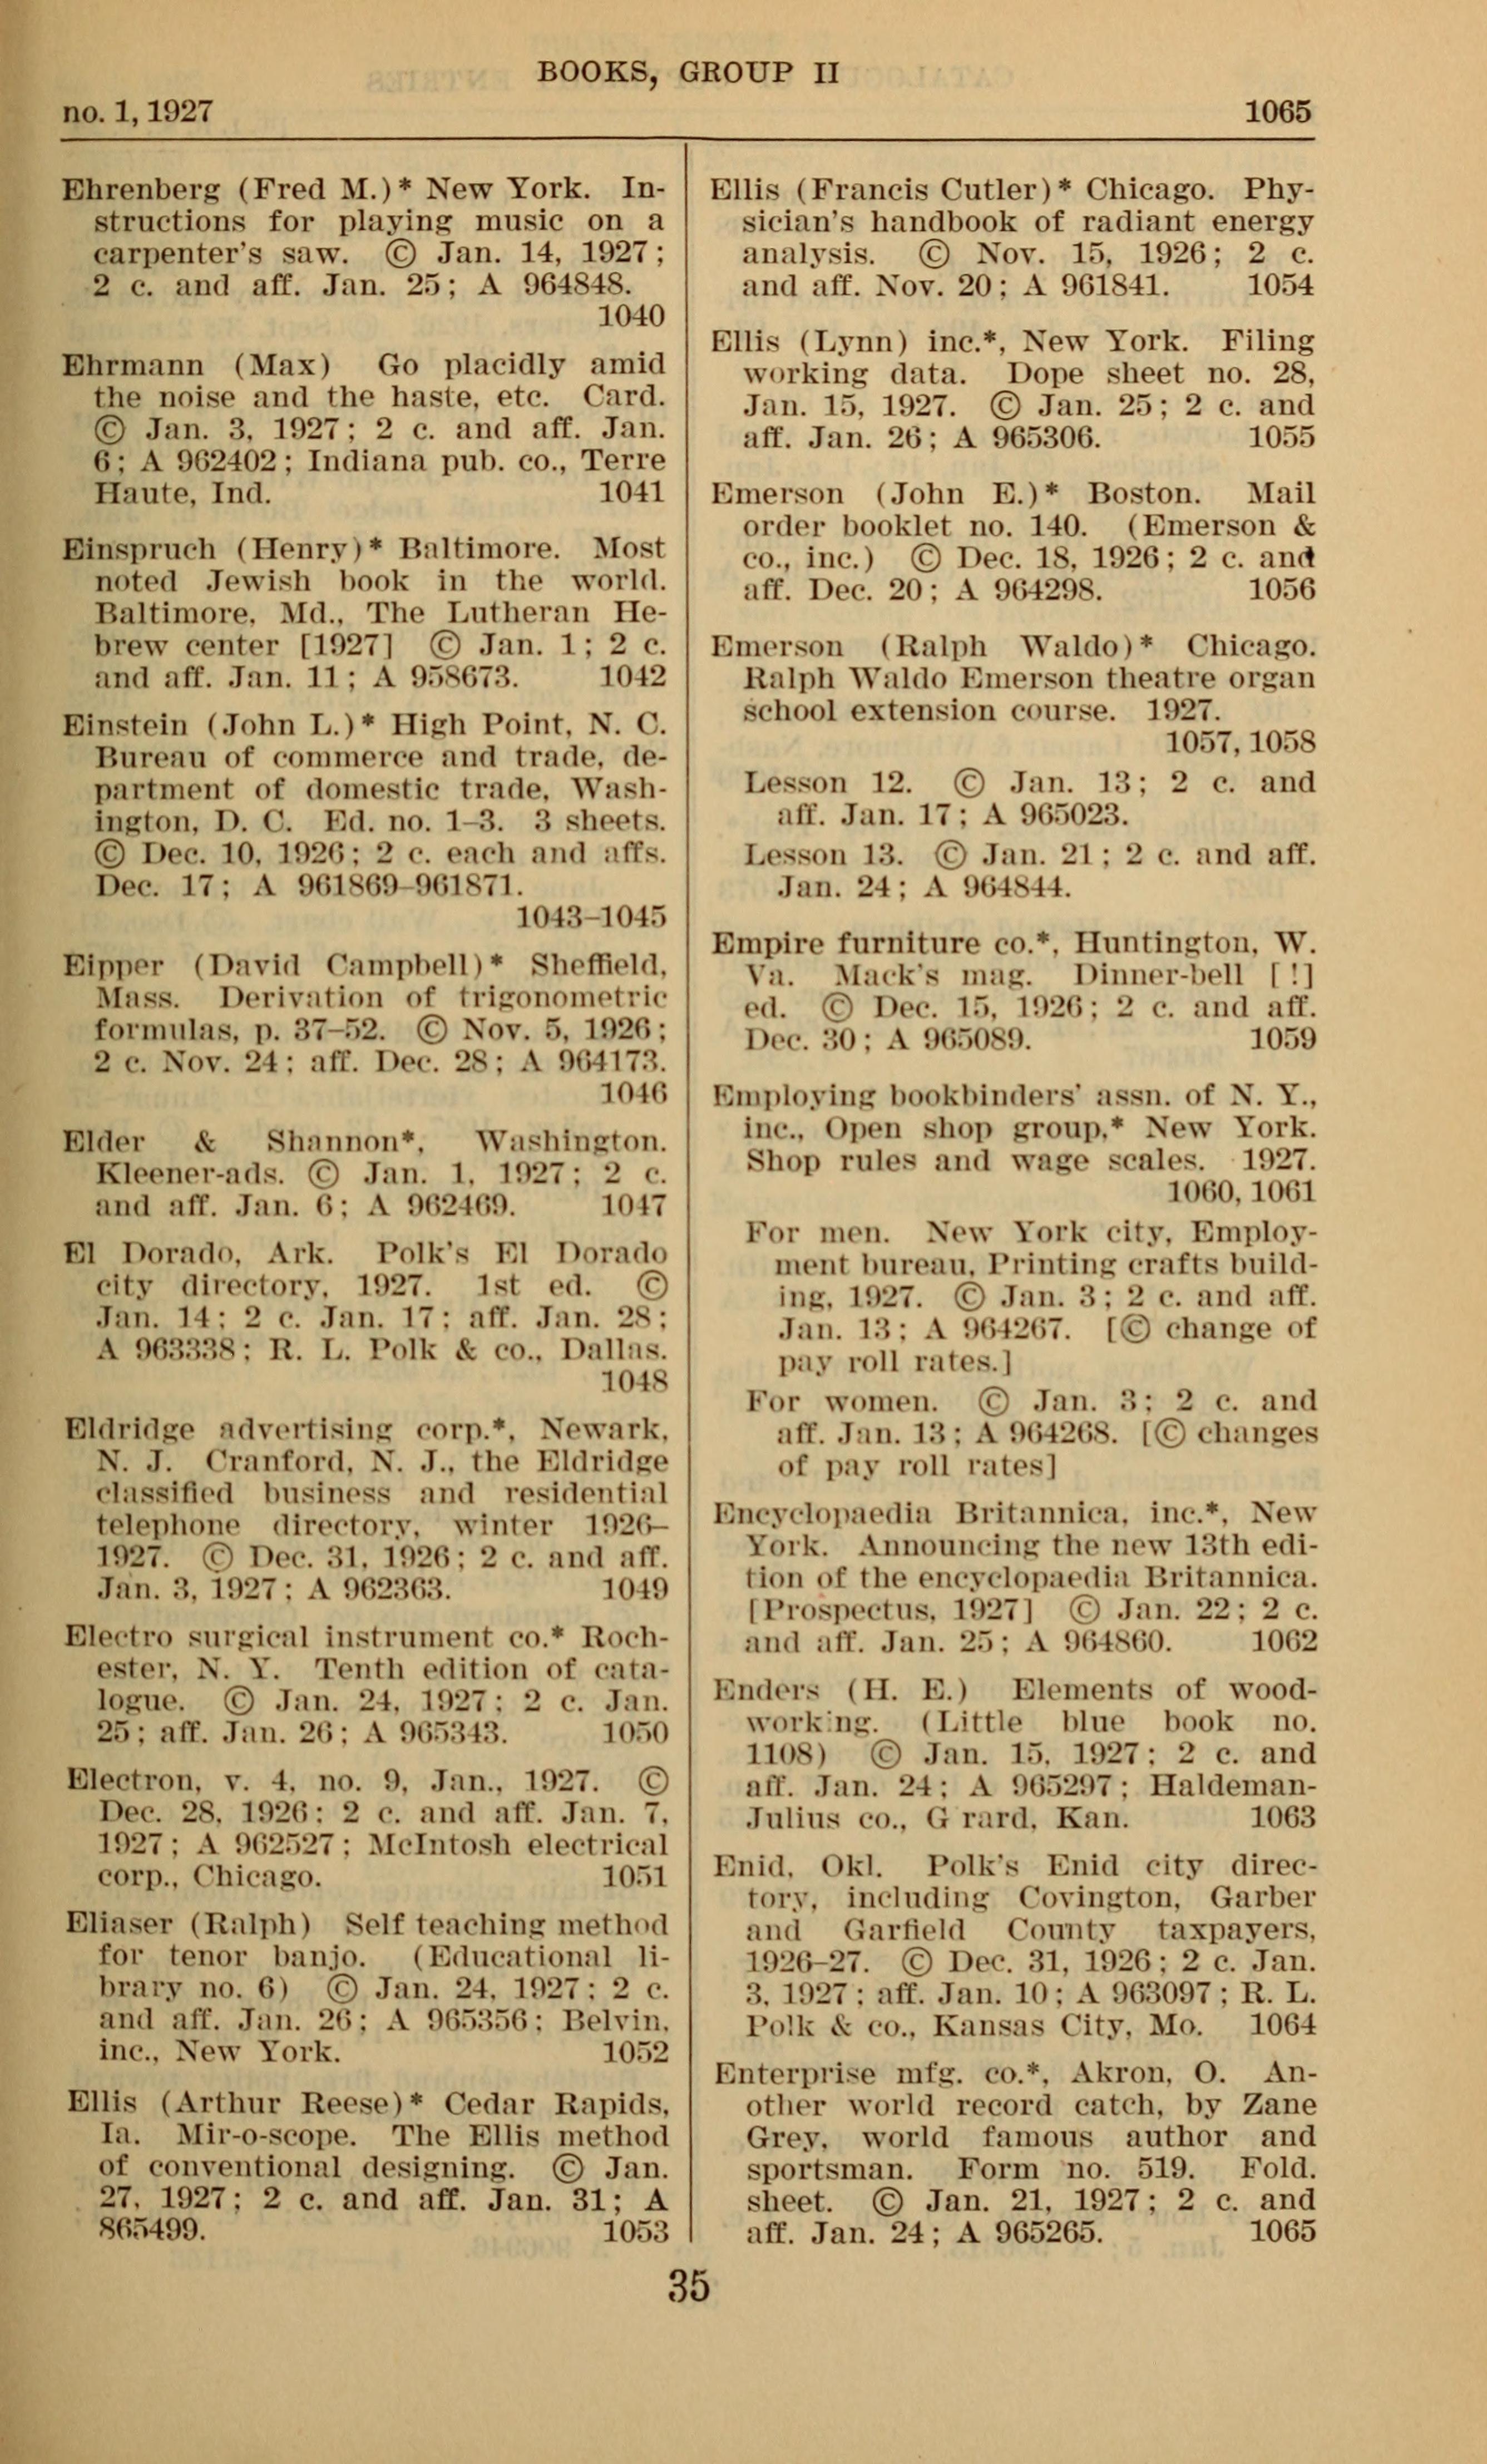 File Desiderata 1927 Copyright Record Jpg Wikimedia Commons